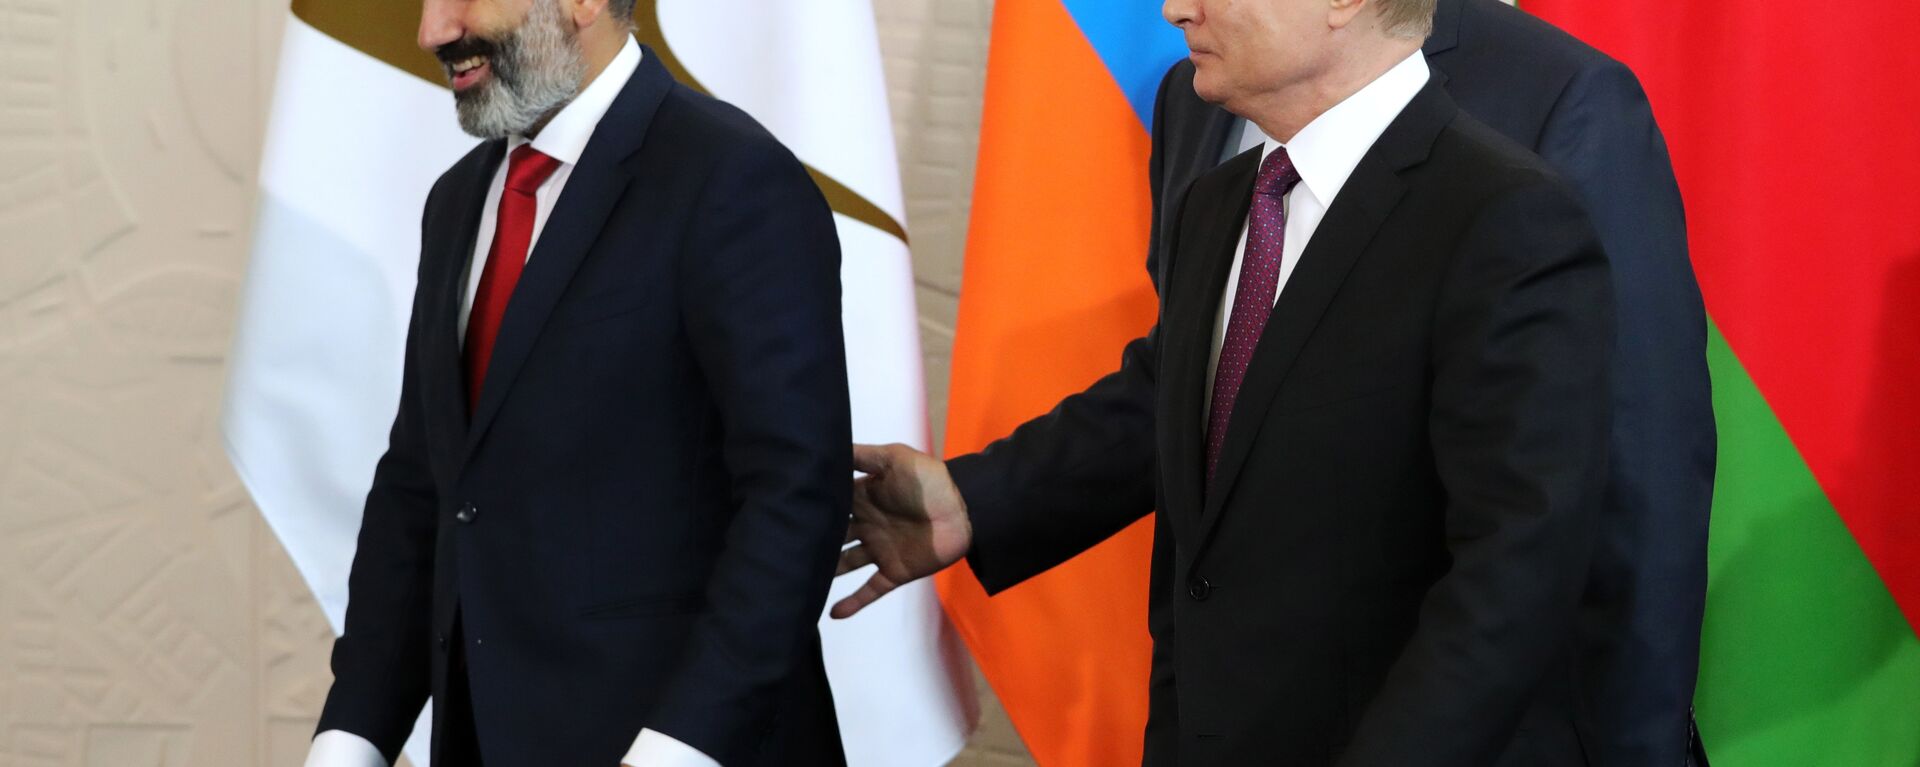 Vladimir Putin və Nikol Paşinyan Soçi görüşü zamanı, 14 may 2018-ci il - Sputnik Azərbaycan, 1920, 25.02.2021